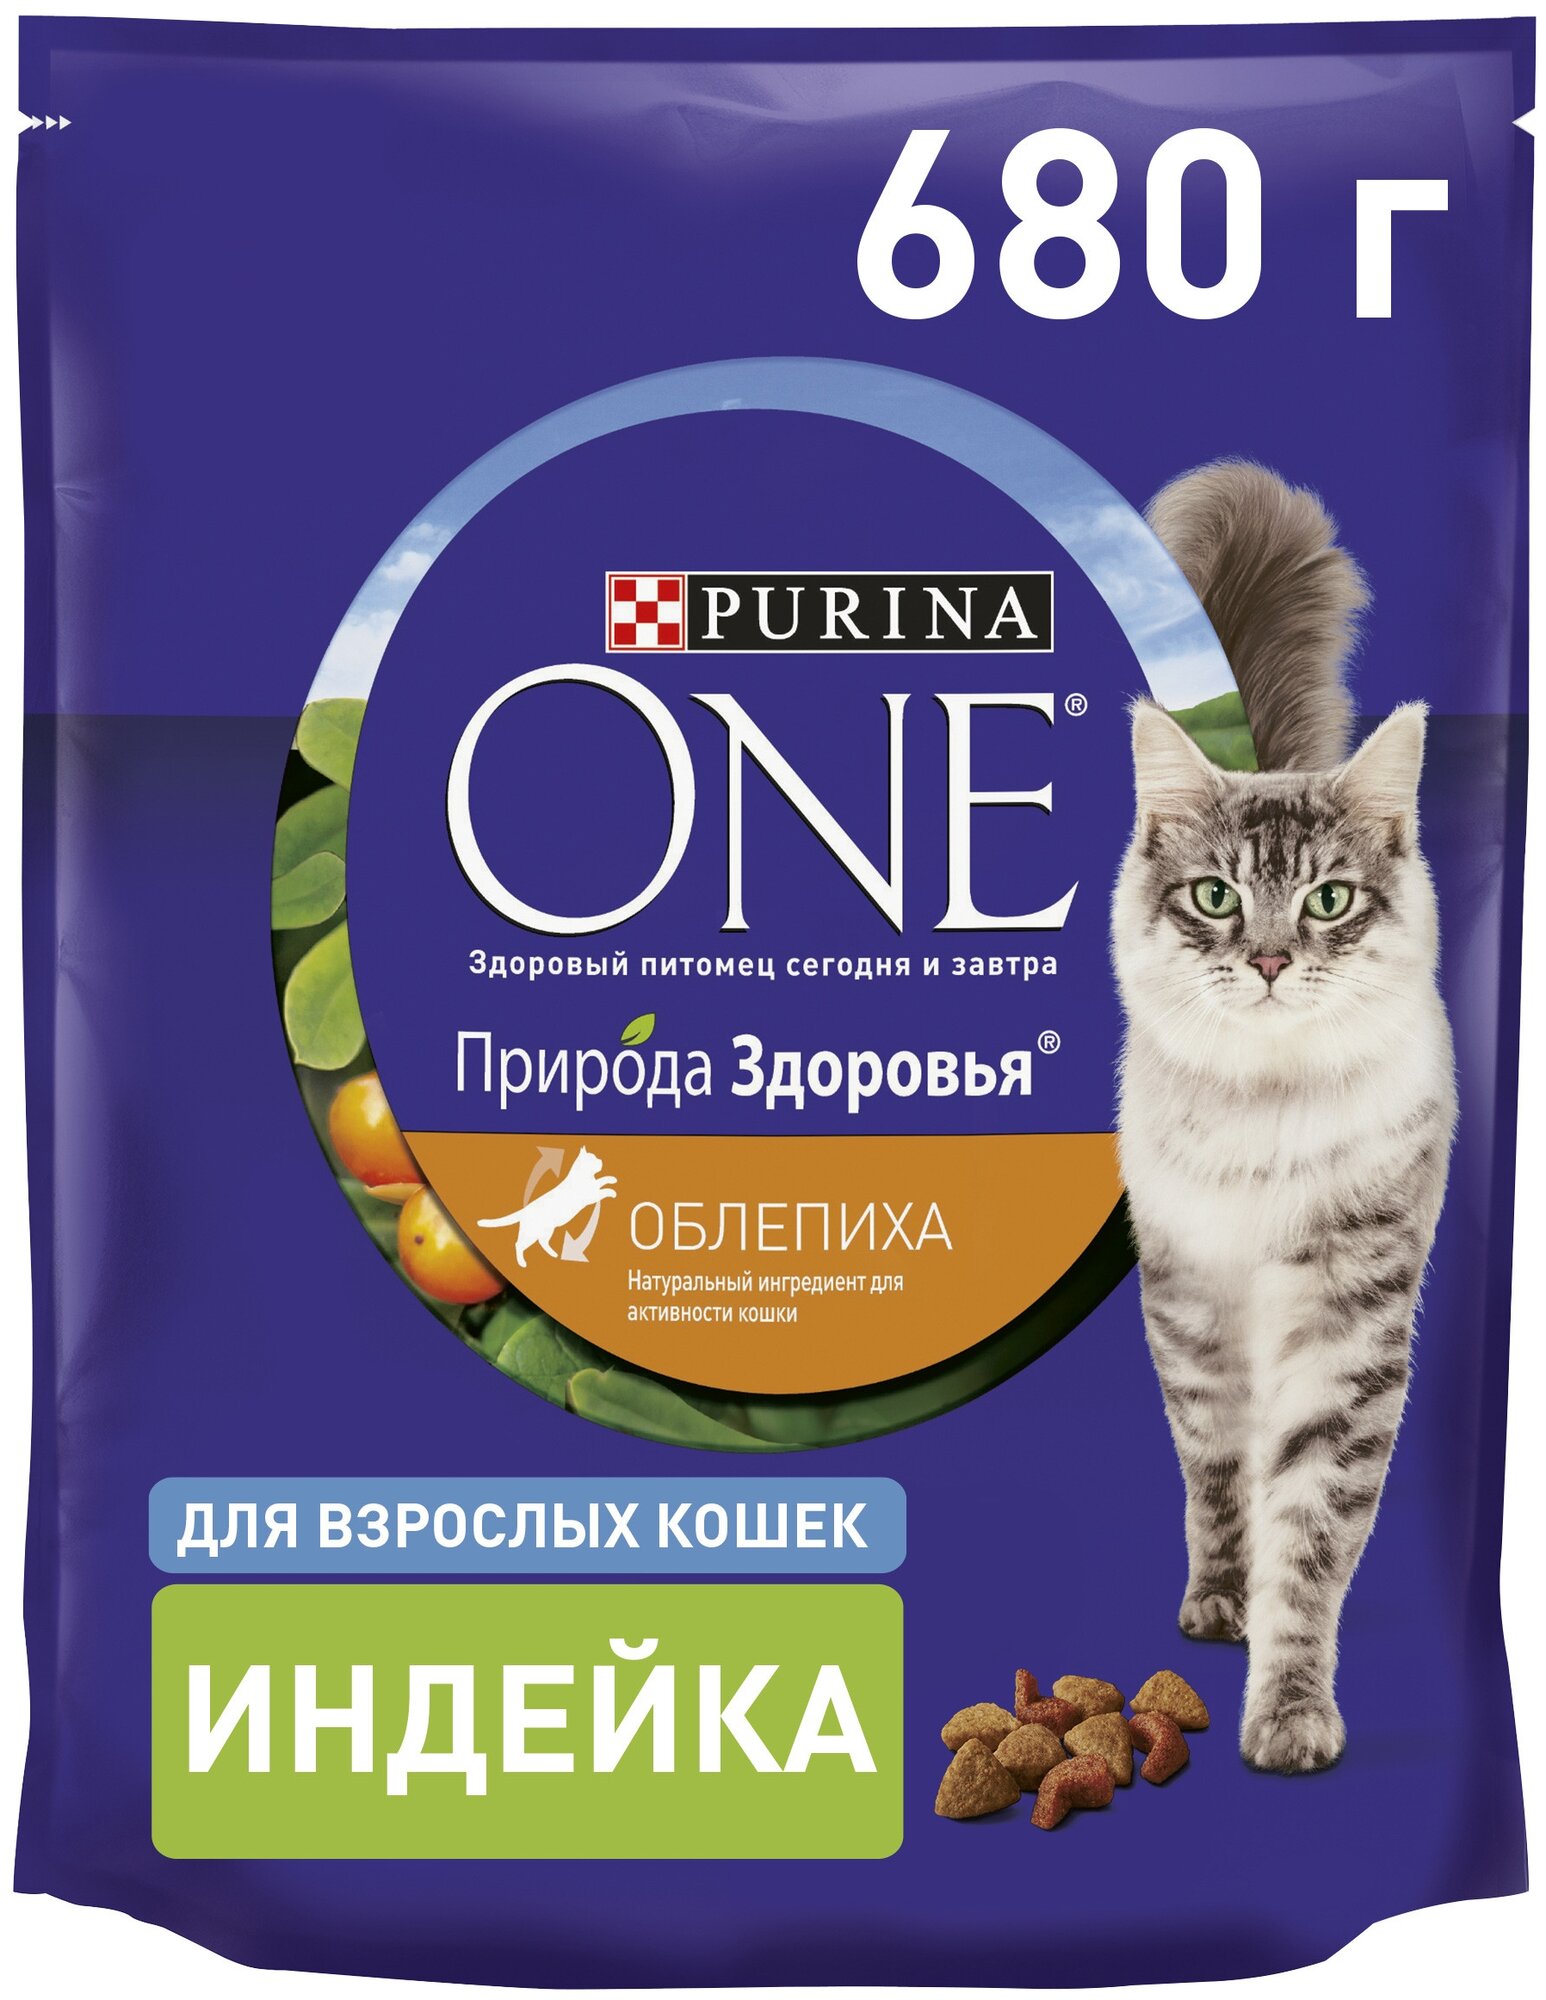 Сухой корм Purina ONE® Природа Здоровья для взрослых кошек, с высоким содержанием индейки, 680 г - фотография № 1